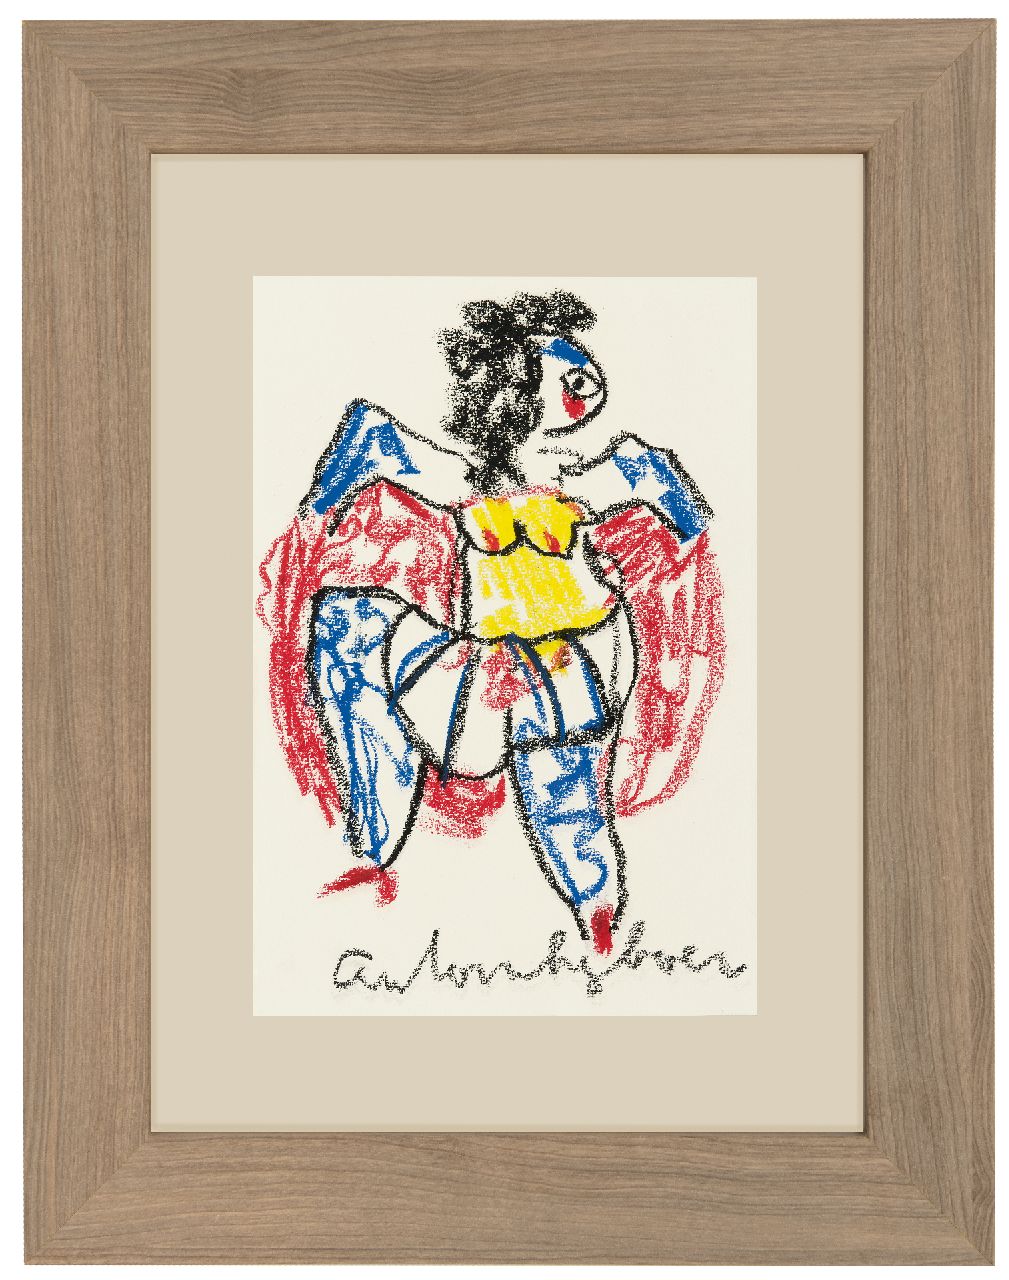 Heyboer A.  | Anton Heyboer | Aquarellen en tekeningen te koop aangeboden | Danseres, krijt op papier 29,0 x 20,0 cm, gesigneerd middenonder